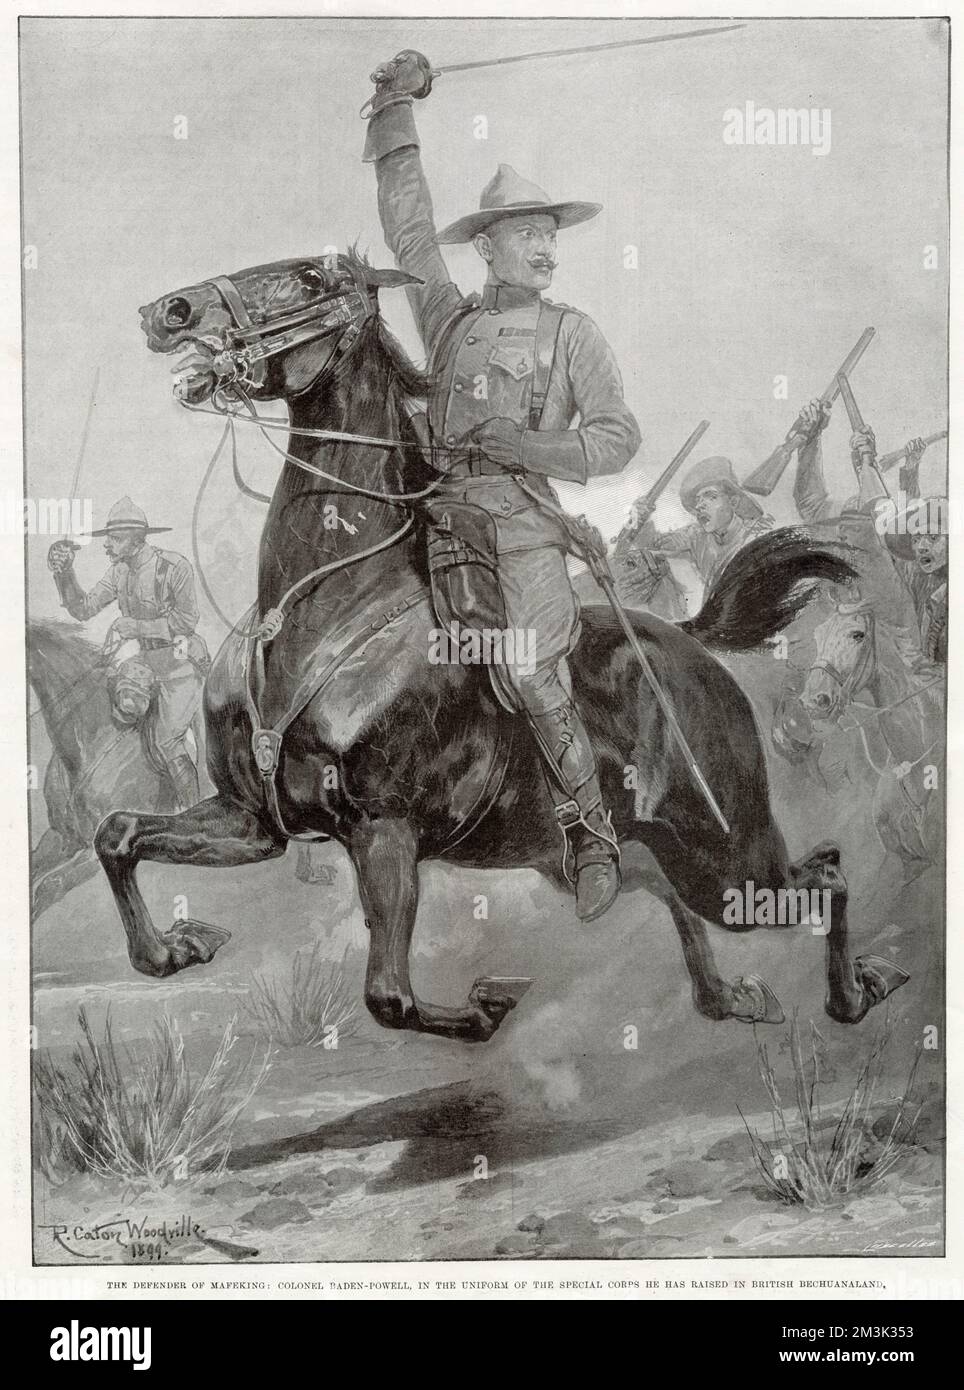 Robert Baden-Powell, 1.. Baron Baden-Powell, führt einen Kavallerieeinsatz in Südafrika. Er wird in der Uniform des Special Corps gezeigt, die er im britischen Bechuanaland aufzog. Nach seiner Rückkehr nach Großbritannien wurde Baden-Powell besser bekannt als der Gründer der Pfadfinder. Datum: 1899 Stockfoto